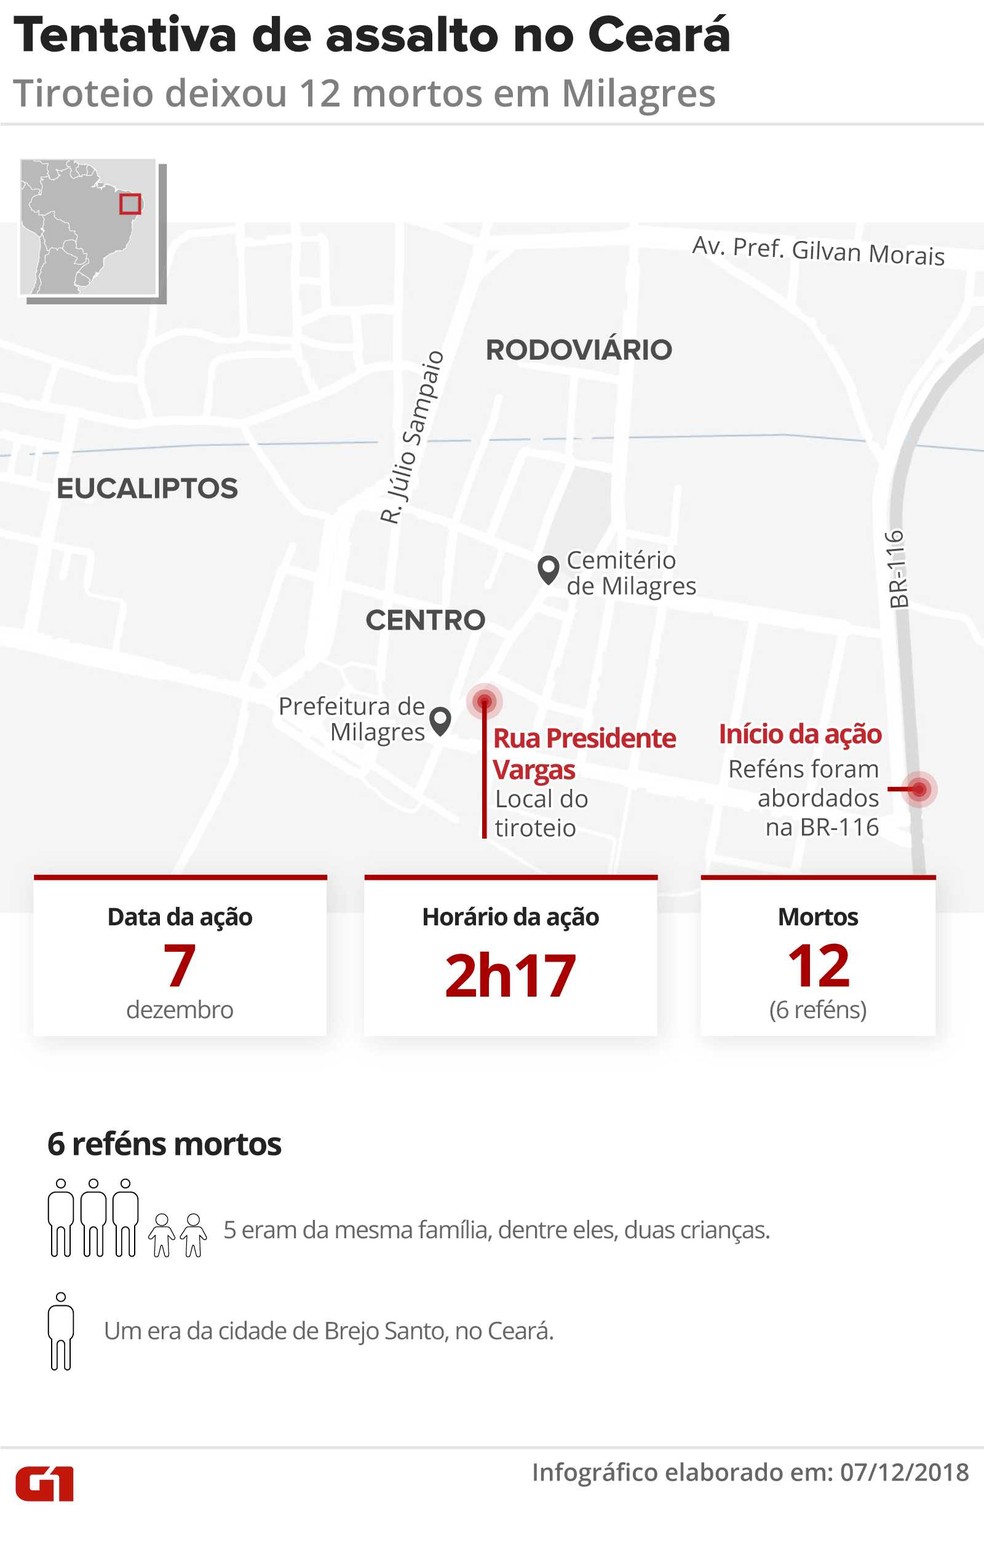 mapa-ceara-milagres-tiroteio Tentativa de assalto a bancos com reféns deixa 12 mortos